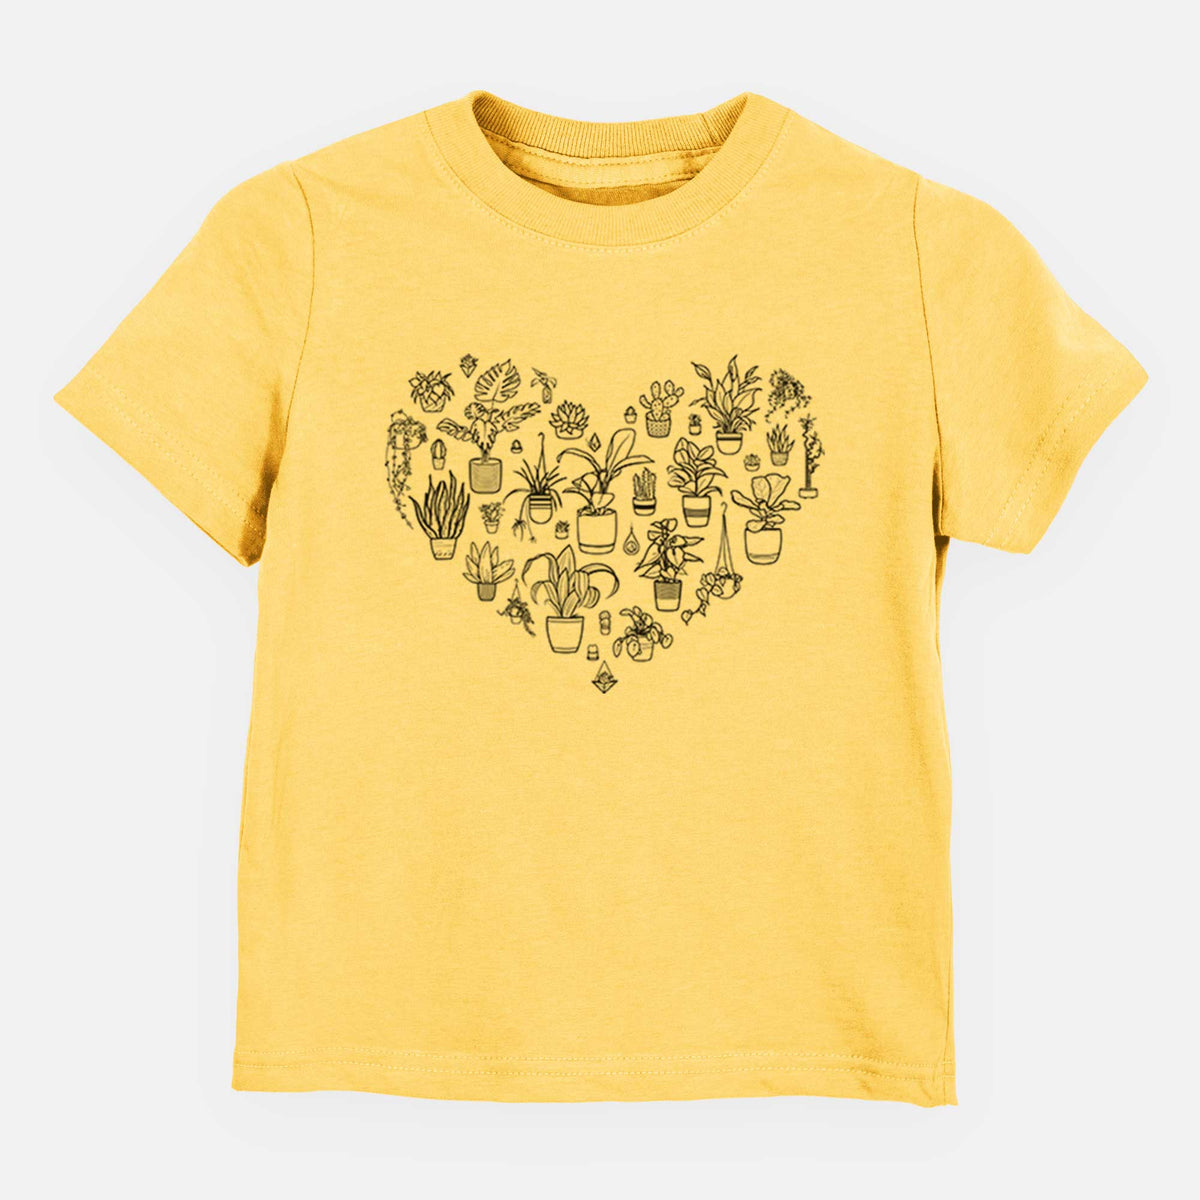 Heart Full of House Plants - Kids Shirt